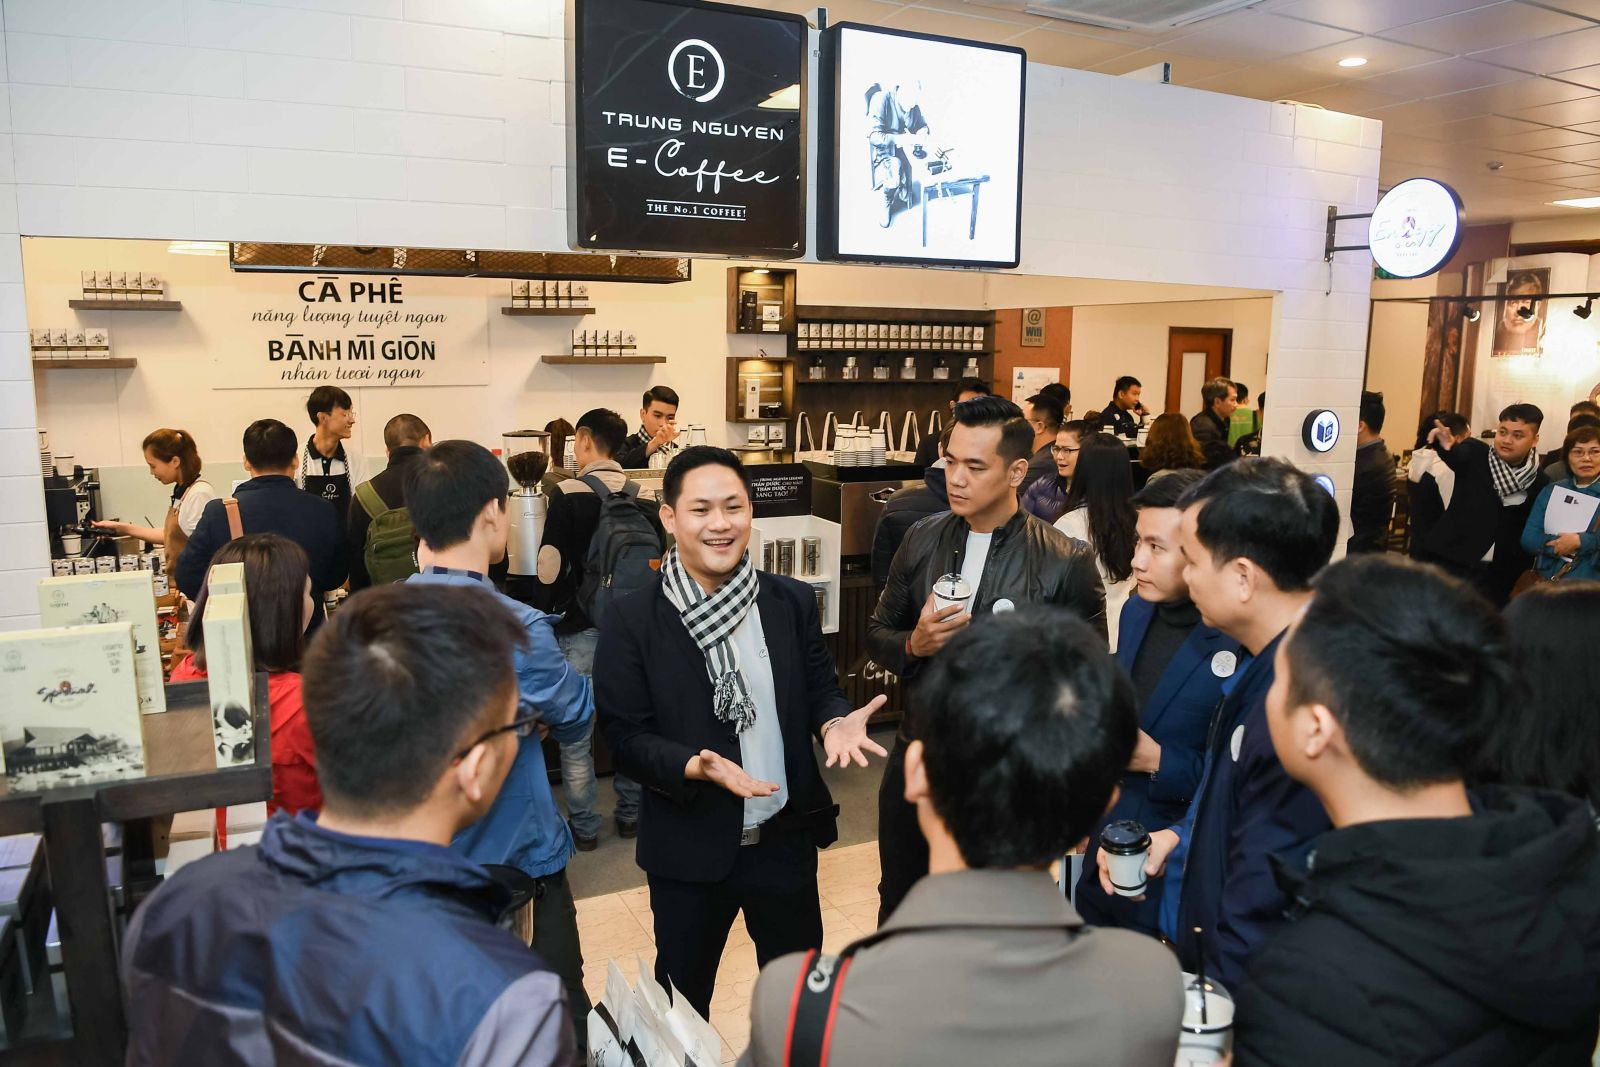 Trung Nguyên E-Coffee - hệ thống chuỗi cửa hàng bán lẻ thế giới cà phê của tập đoàn Trung Nguyên Legend nhanh chóng tạo nên một làn sóng bùng nổ mạnh mẽ